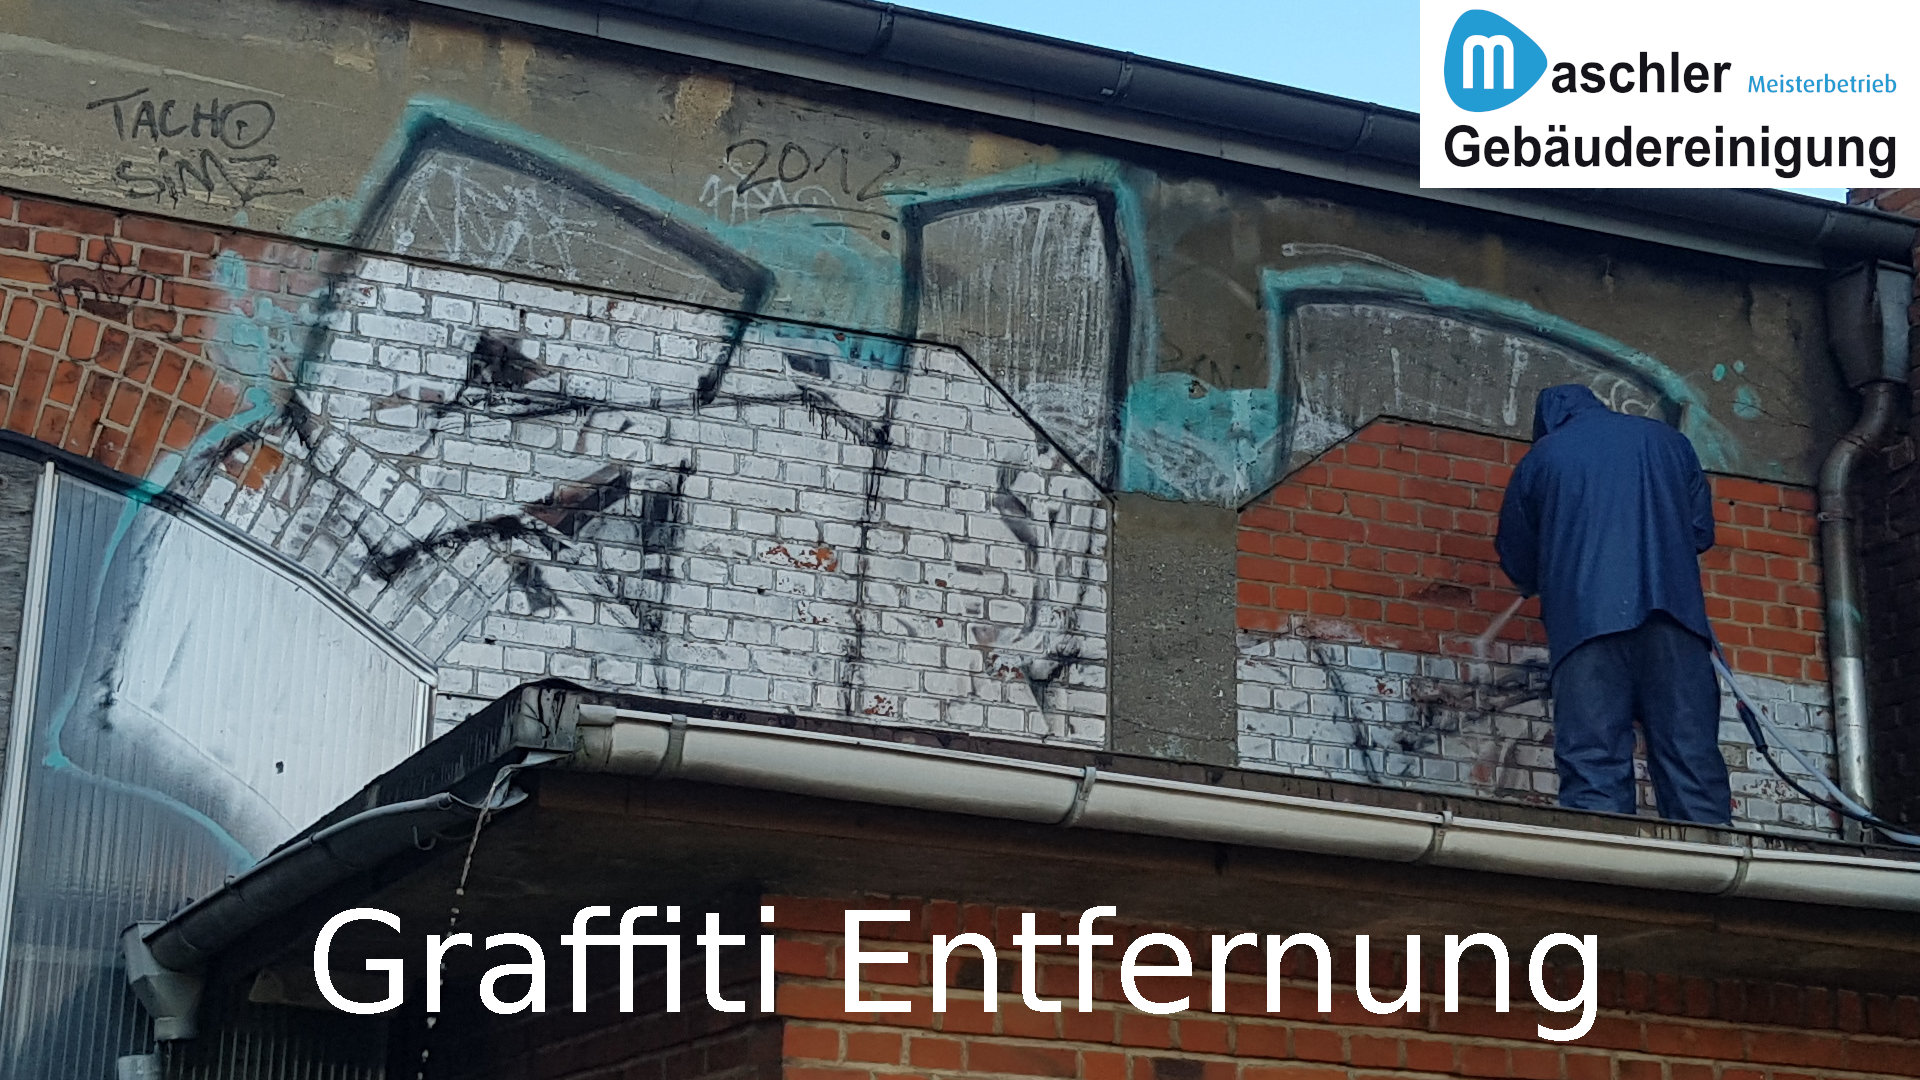 Graffiti Entfernung - Gebäudereinigung Maschler Schwerin